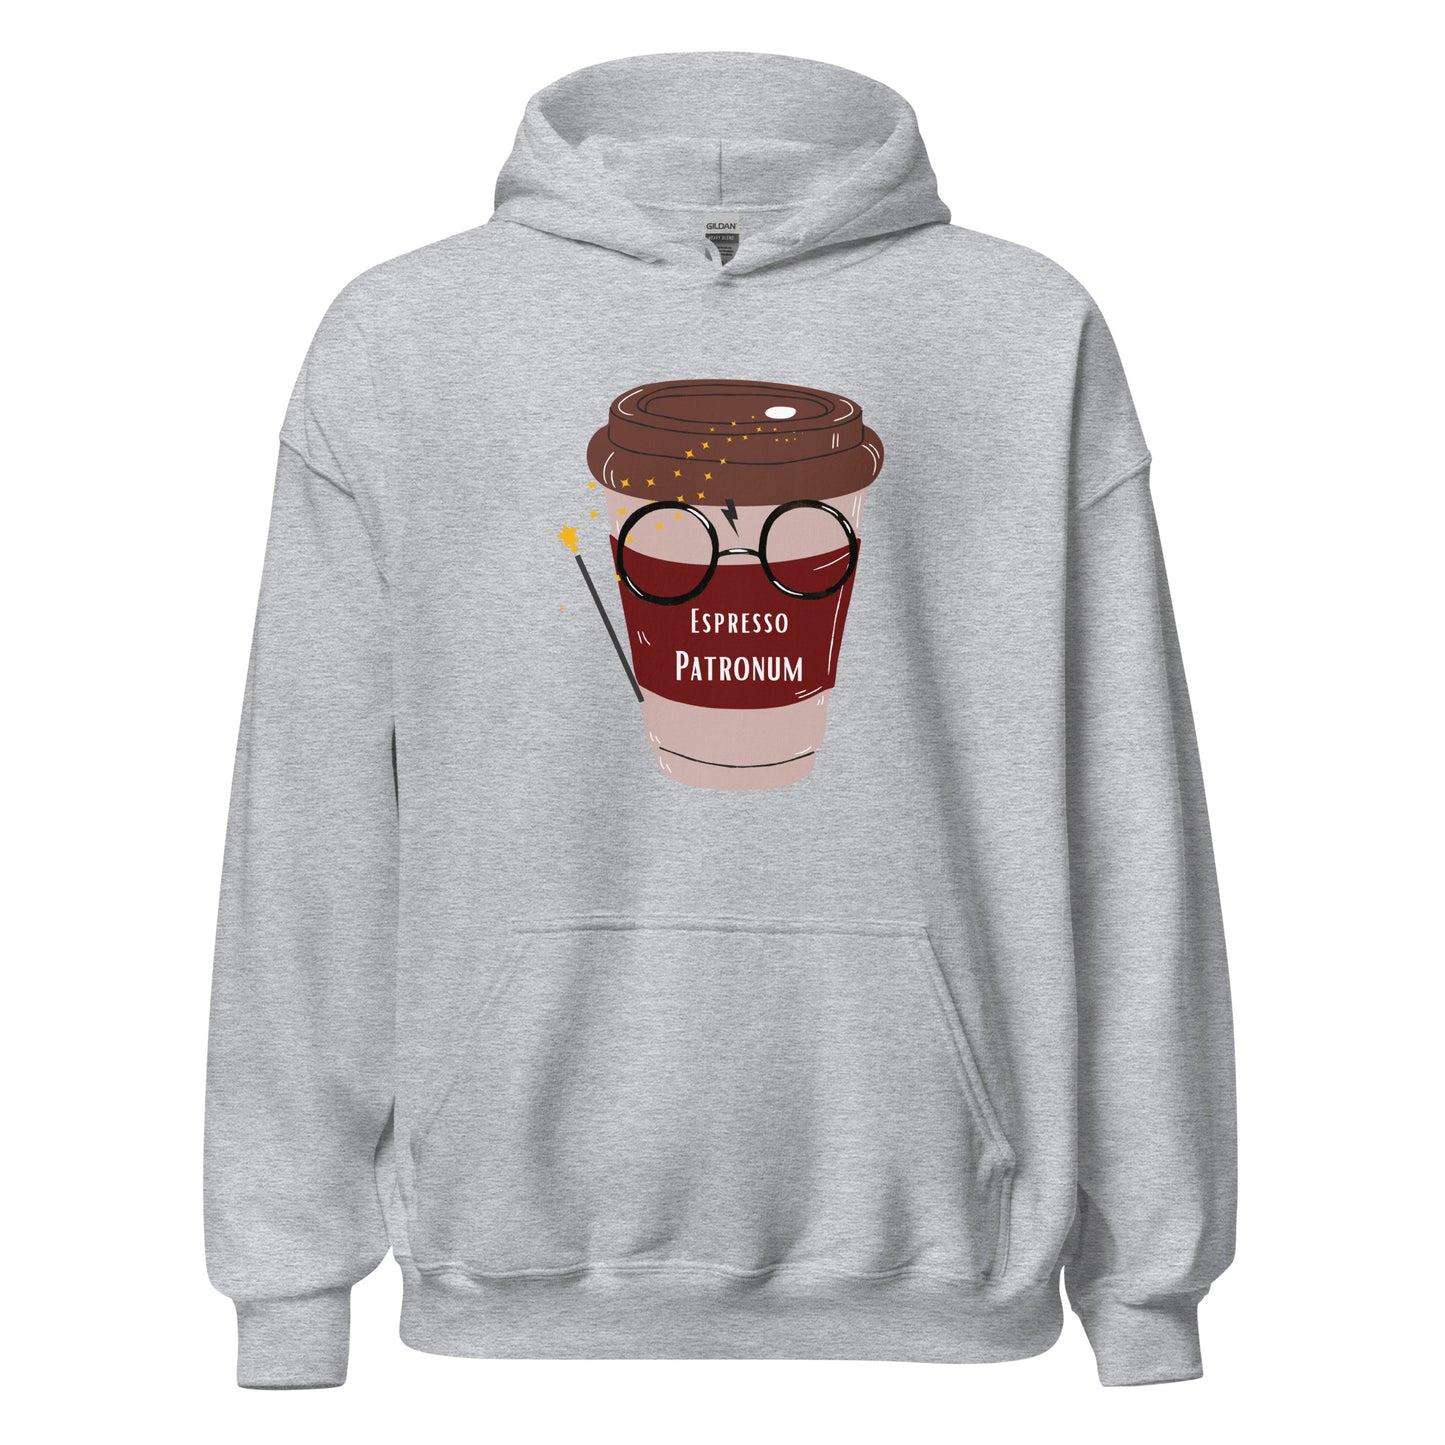 Hoodie - Espresso patronum